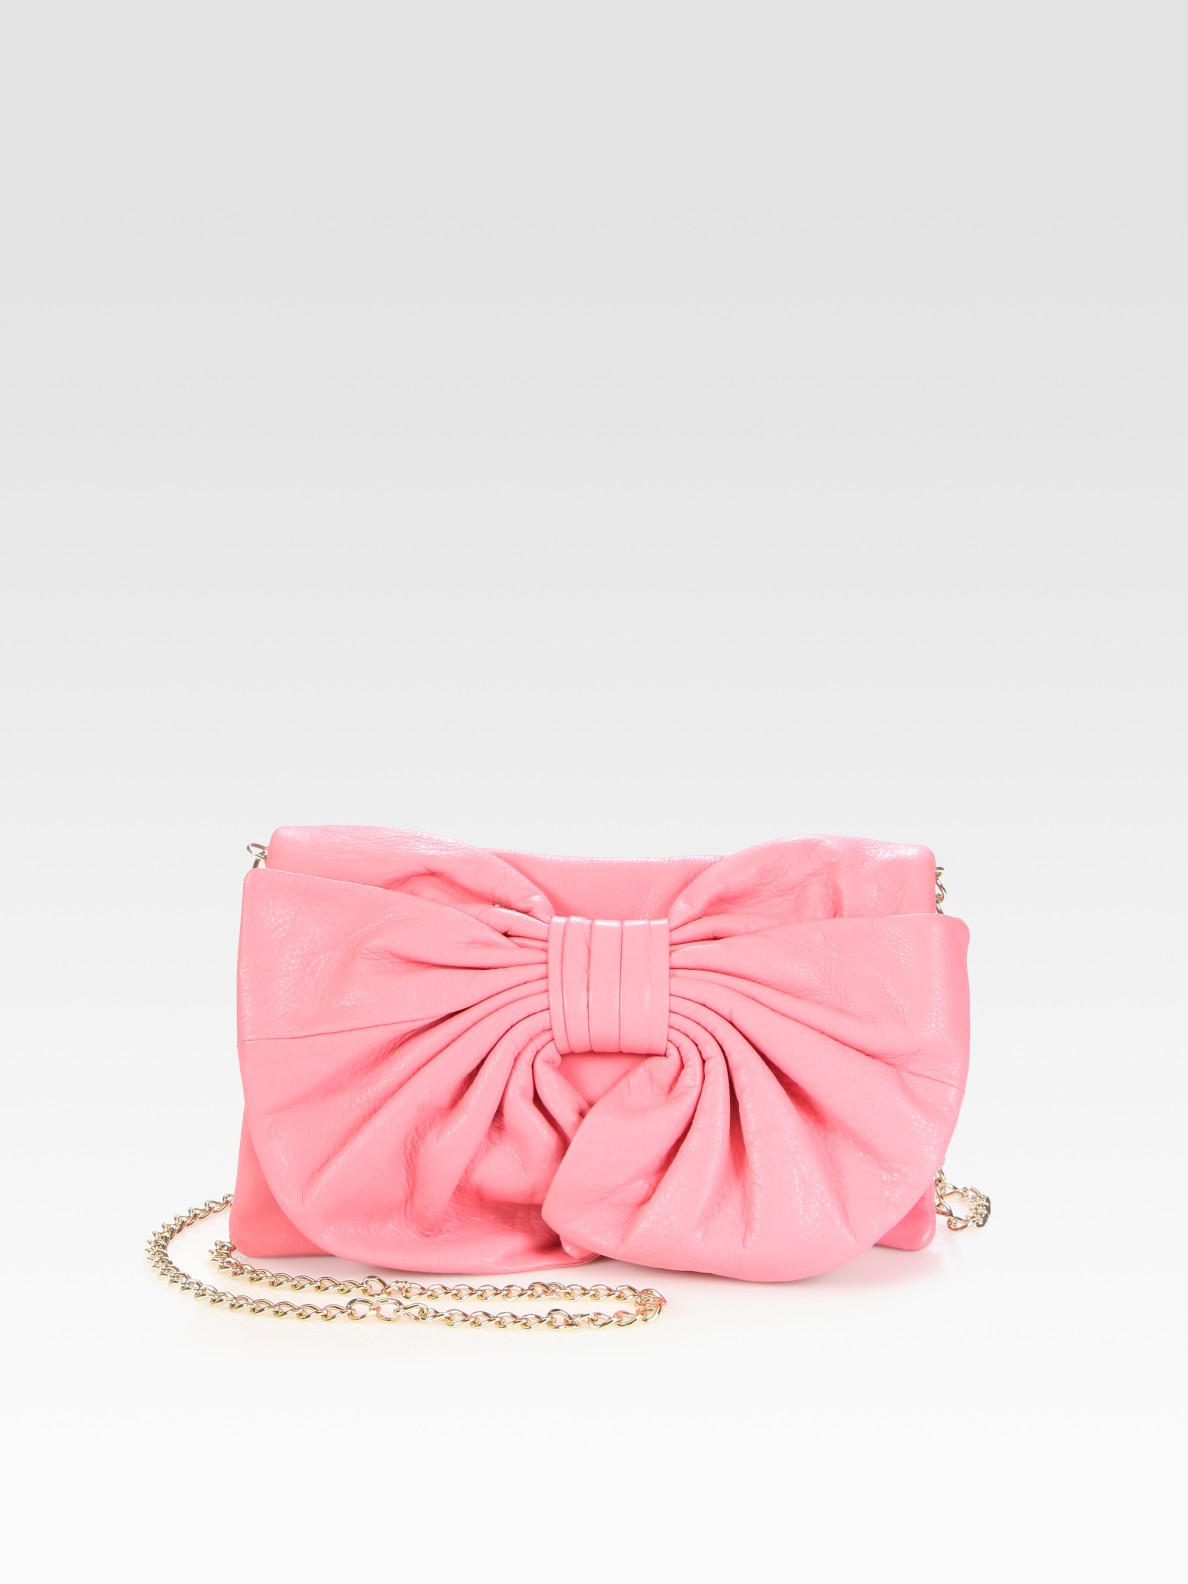 trist Rundt og rundt udvikle RED Valentino Bow & Chain Strap Shoulder Bag in Pink - Lyst